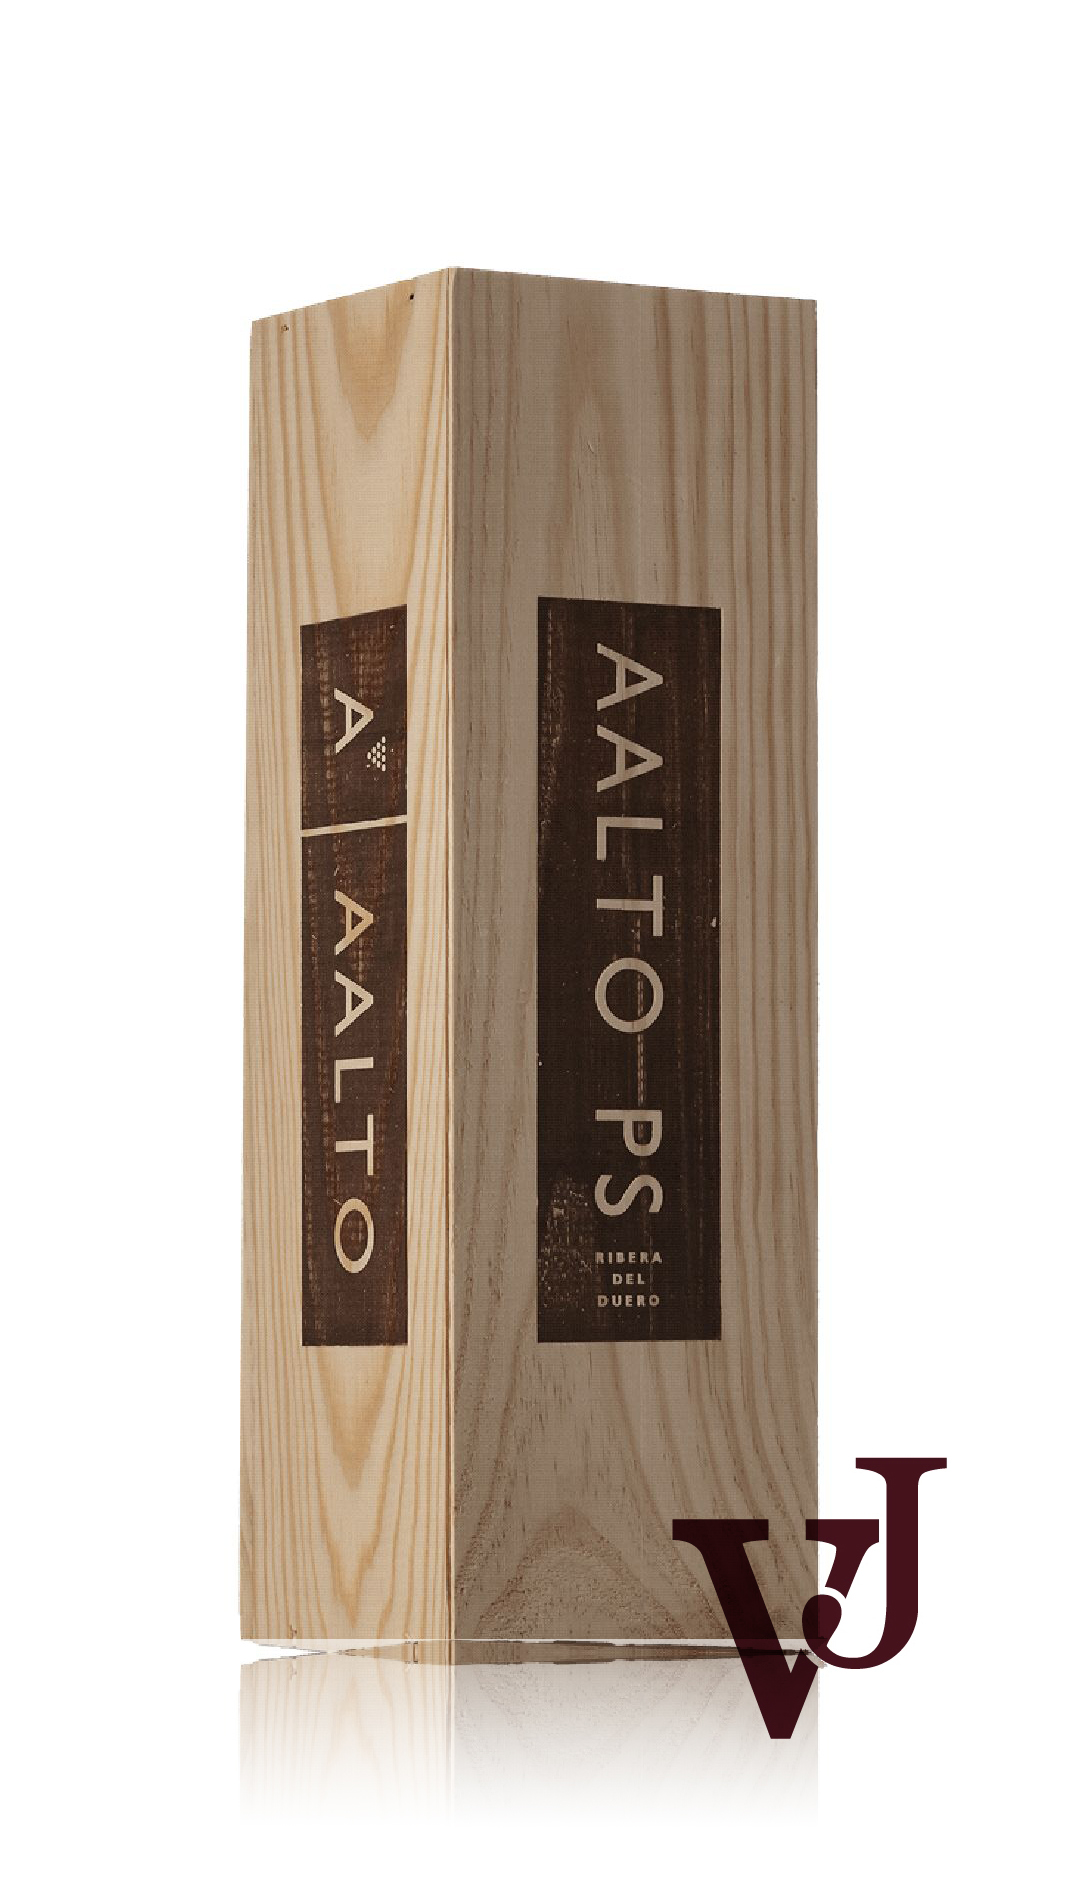 Rött Vin - Aalto PS 2021 artikel nummer 9508806 från producenten Aalto från området Spanien